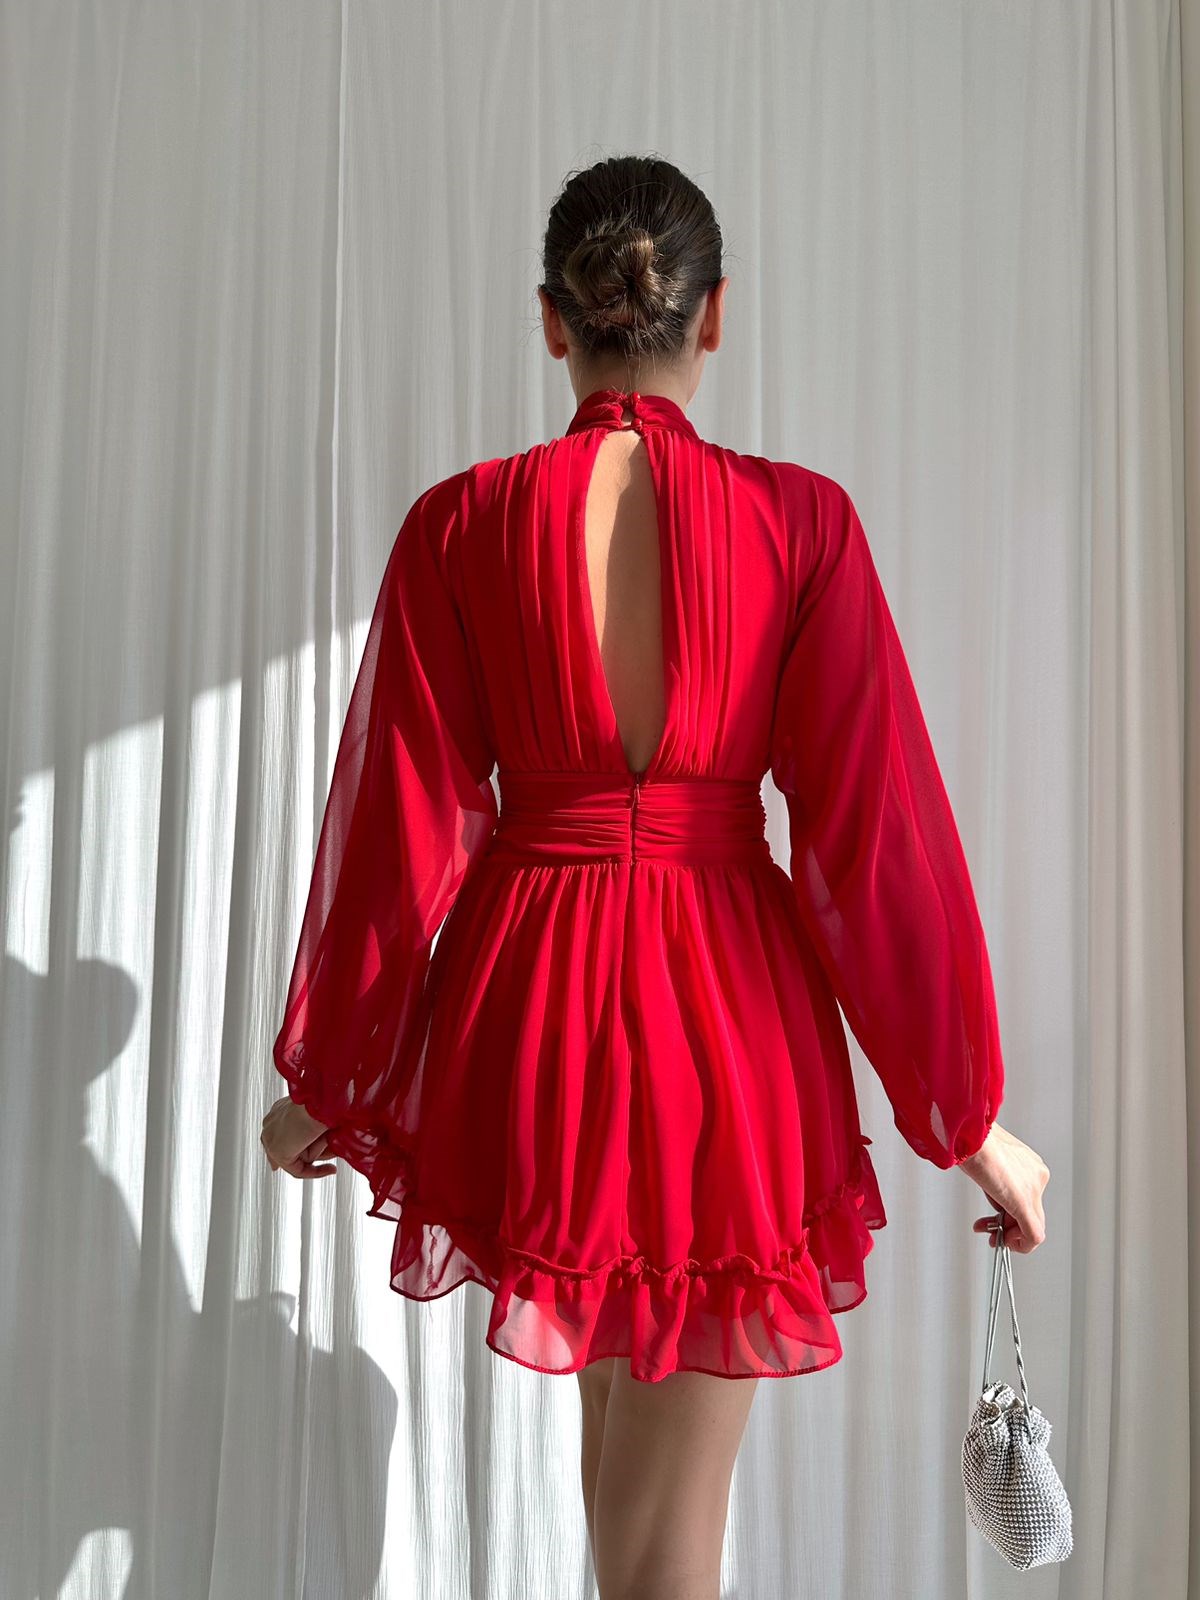 Boğazlı Etek Ucu Fırfırlı Uzun Tül Kol Şifon Kadın Elbise - KIRMIZI